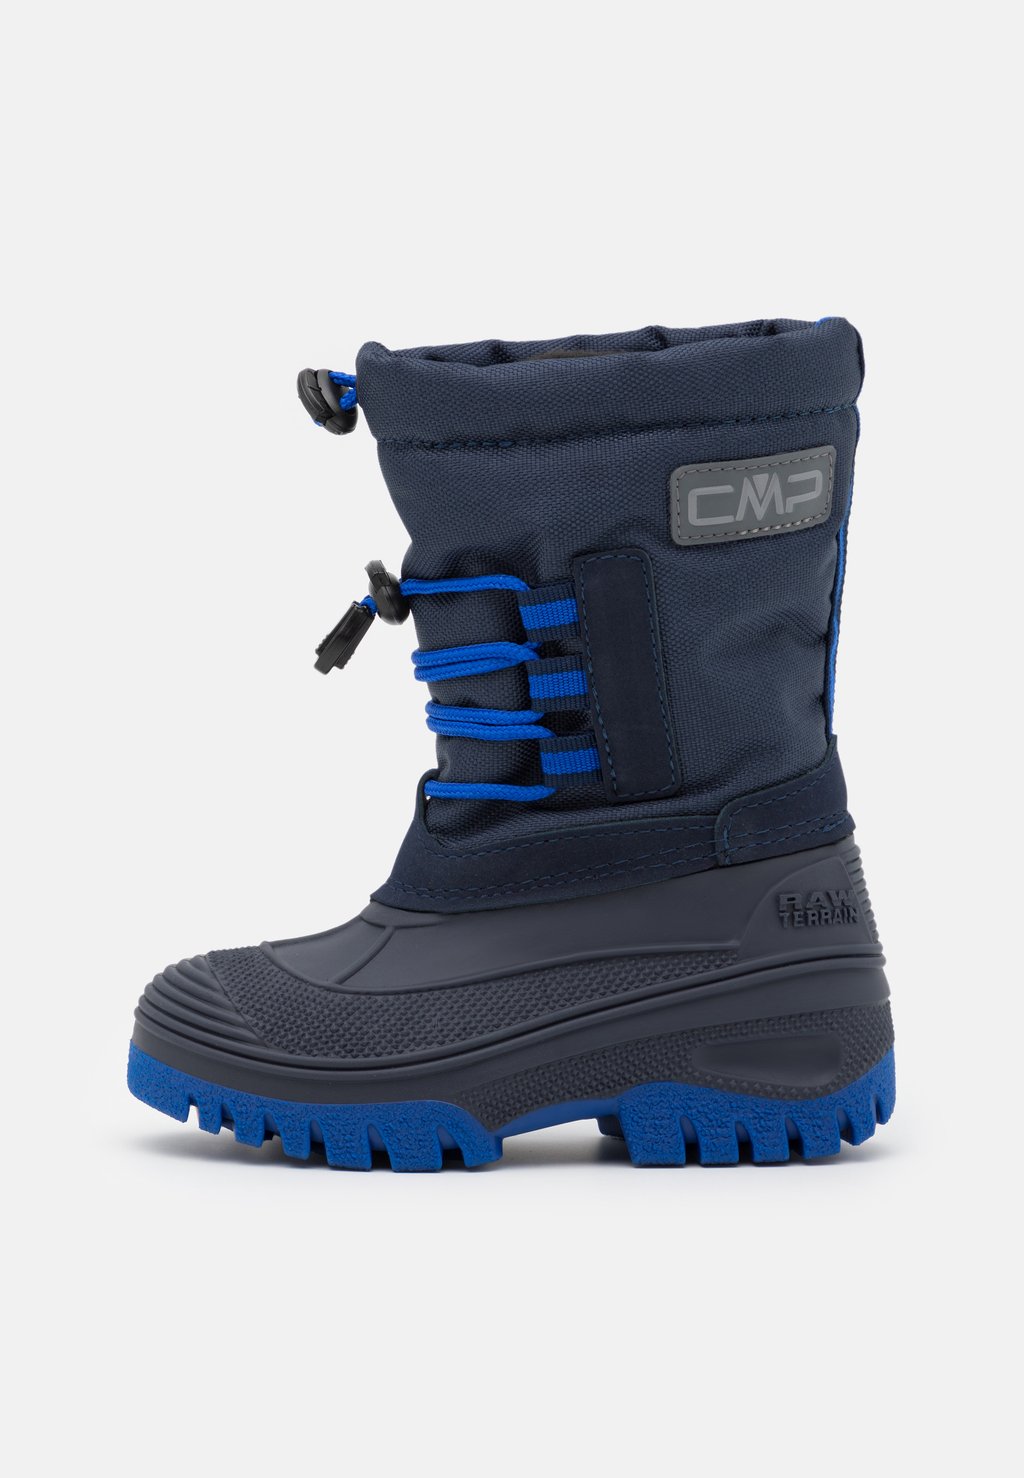 Зимние ботинки/зимние ботинки AHTO WP UNISEX CMP, цвет black blue/royal